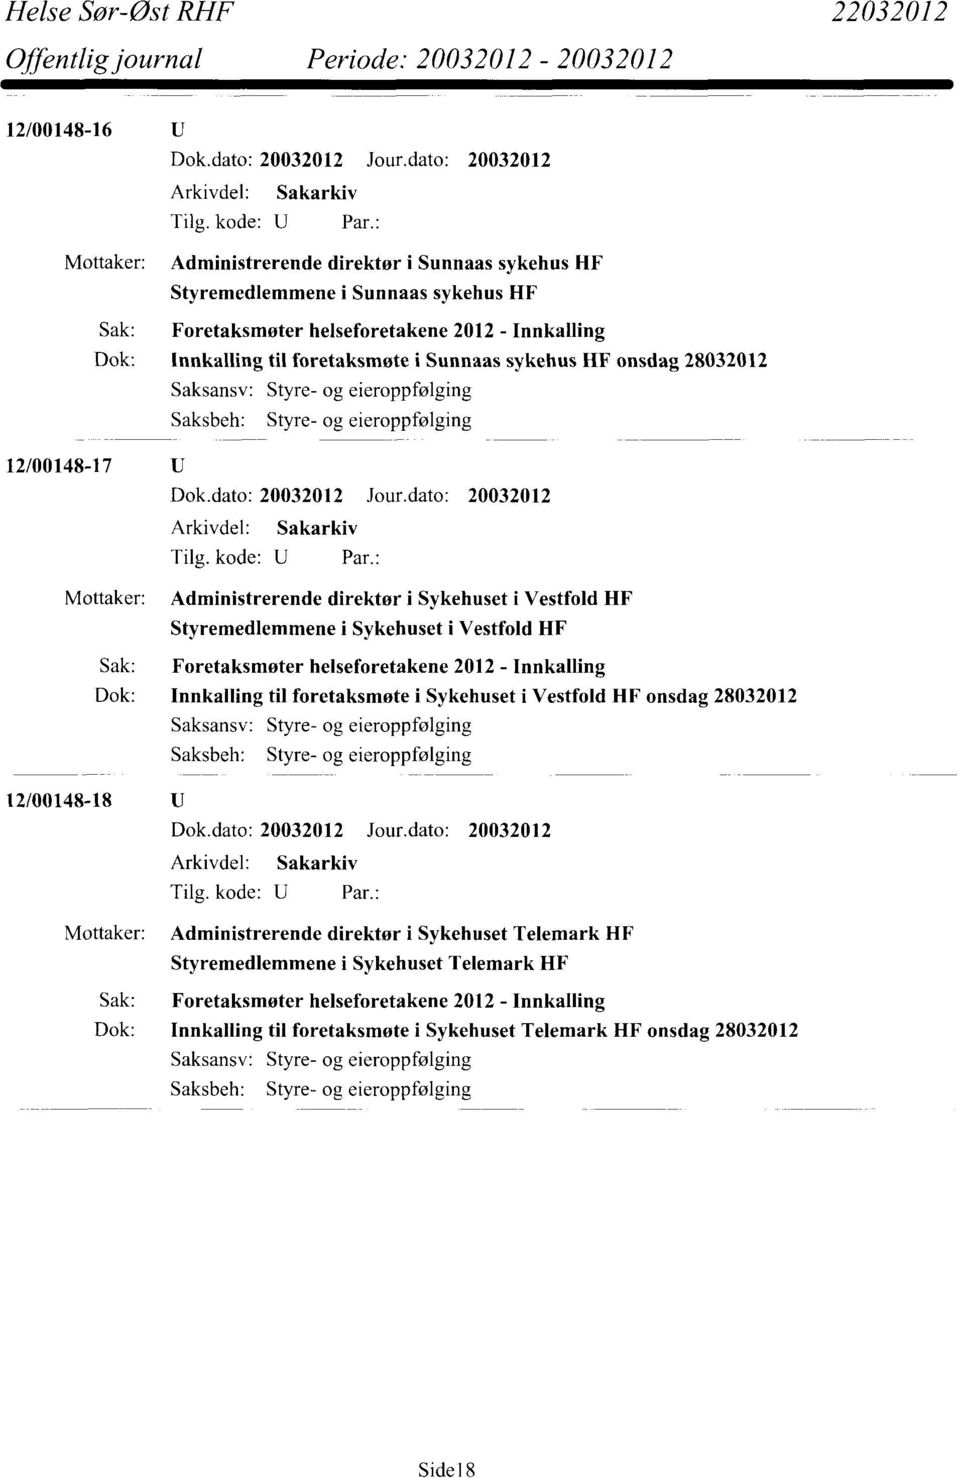 Foretaksmøter helseforetakene 2012 - Innkalling Dok: Innkalling til foretaksmøte i Sykehuset i Vestfold HF onsdag 28032012 Saksbeh: Styre- og eieroppfølging 12/00148-18 Mottaker: Administrerende